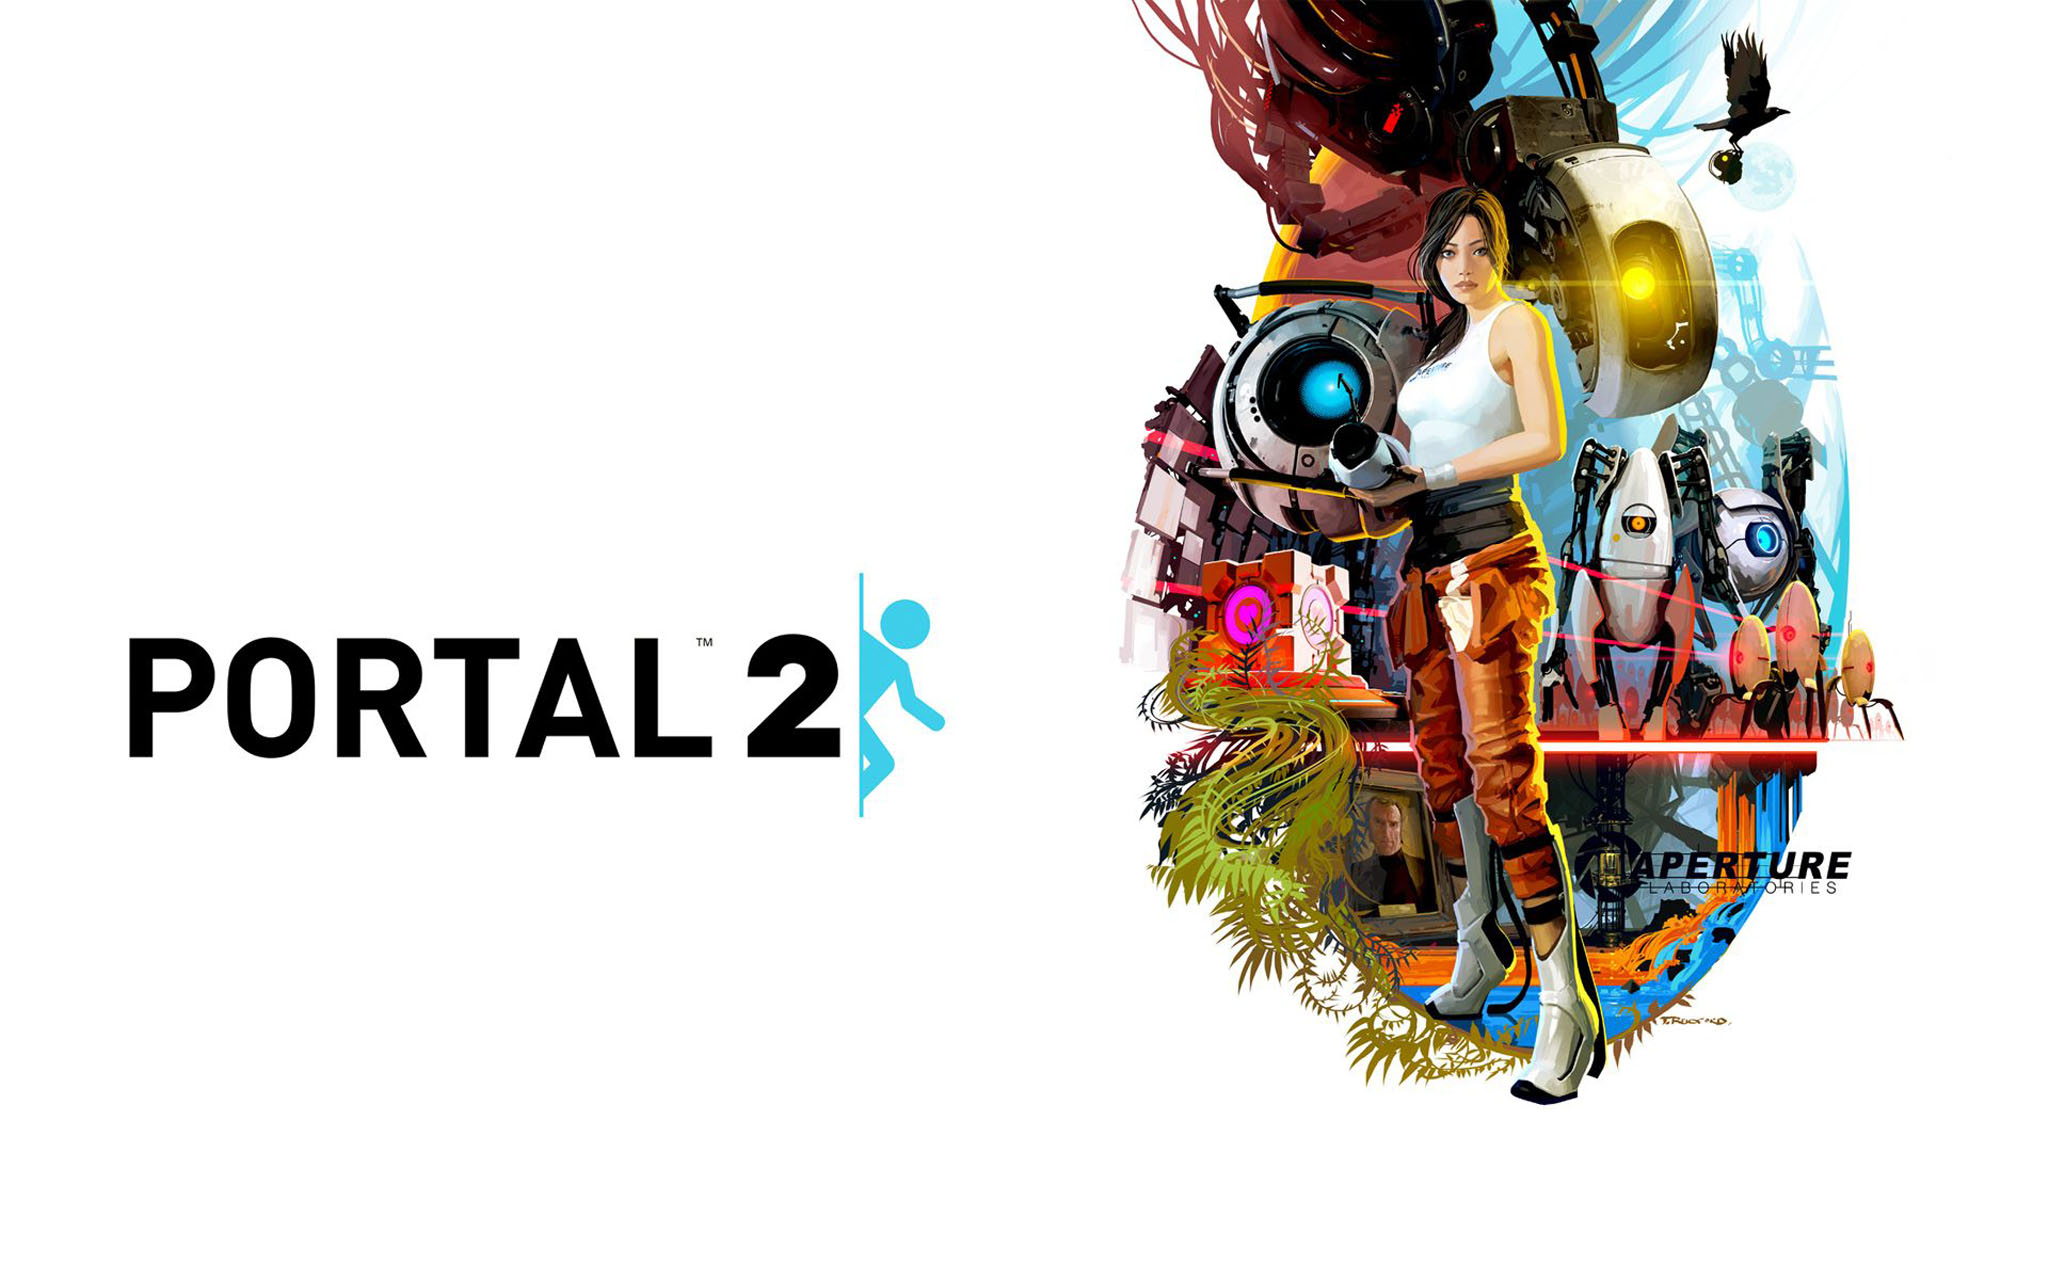 Portal 2: Bạn đã đi đến cùng thế giới game Portal và đang muốn chiêm ngưỡng hình ảnh đầy đủ của nó? Hãy đến với hình ảnh liên quan và khám phá những góc khuất mới của thế giới sống động này.